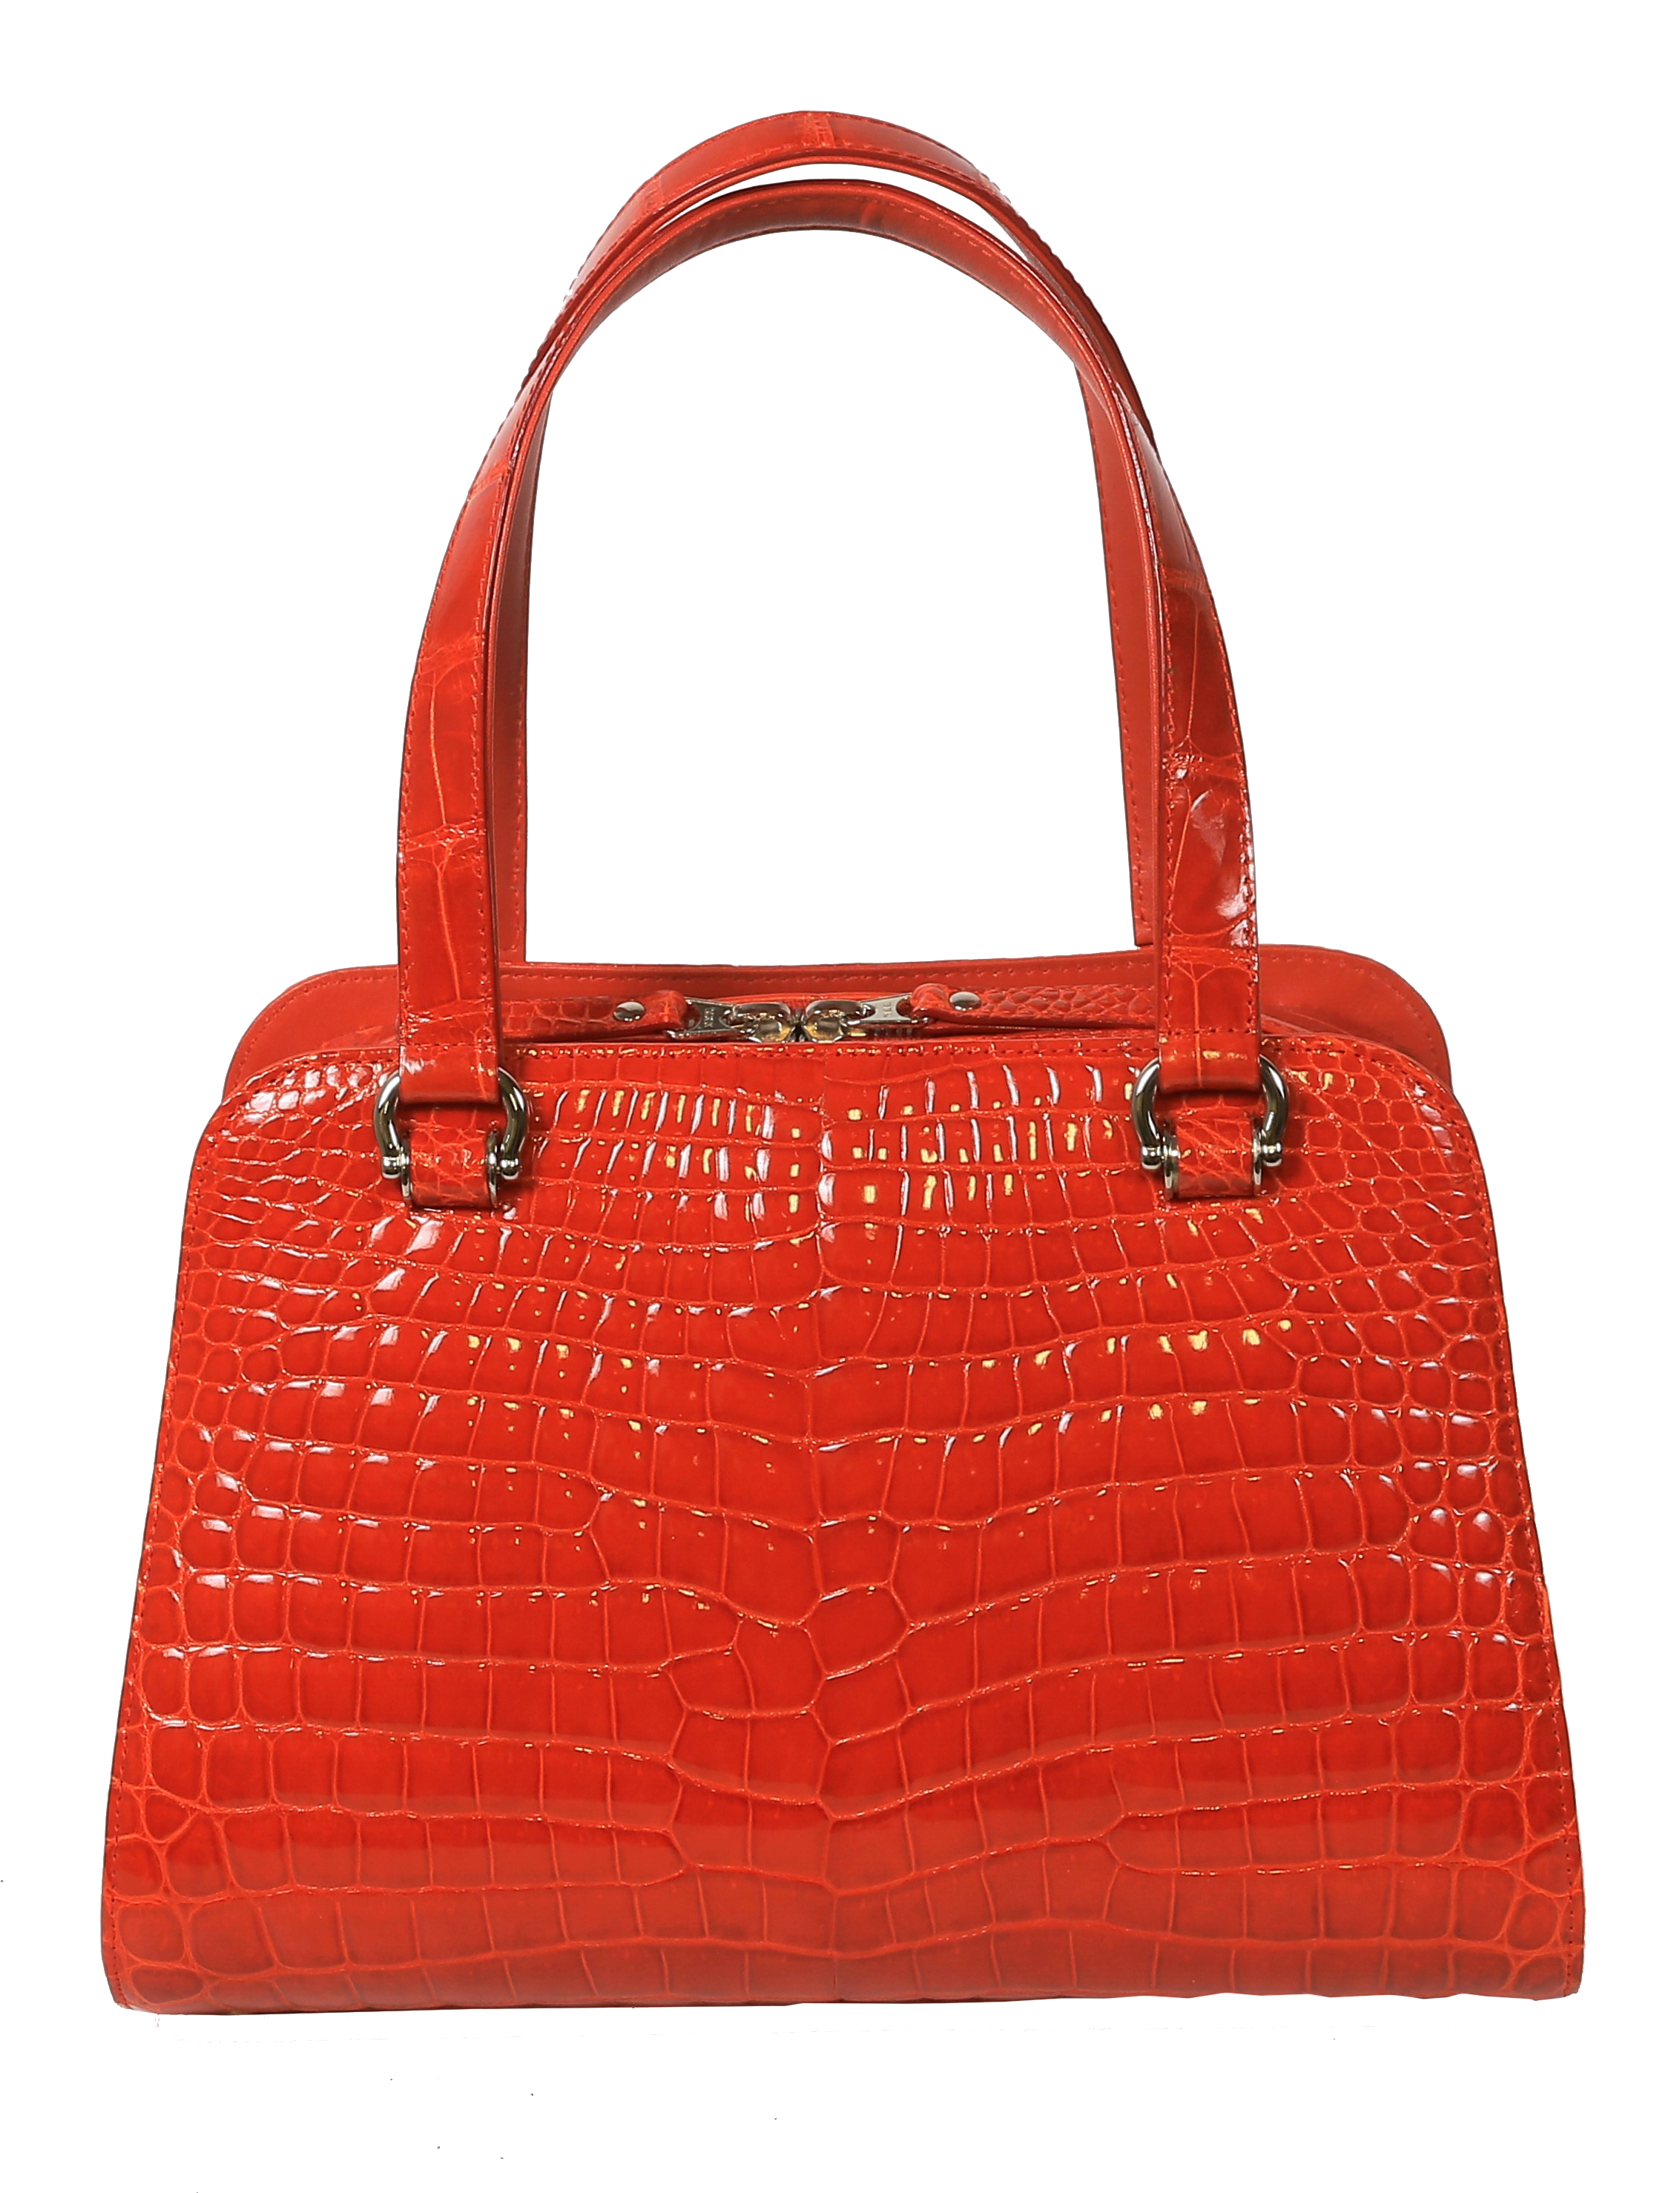 Croctique - Genuine Luxury Crocodile Leather Goods